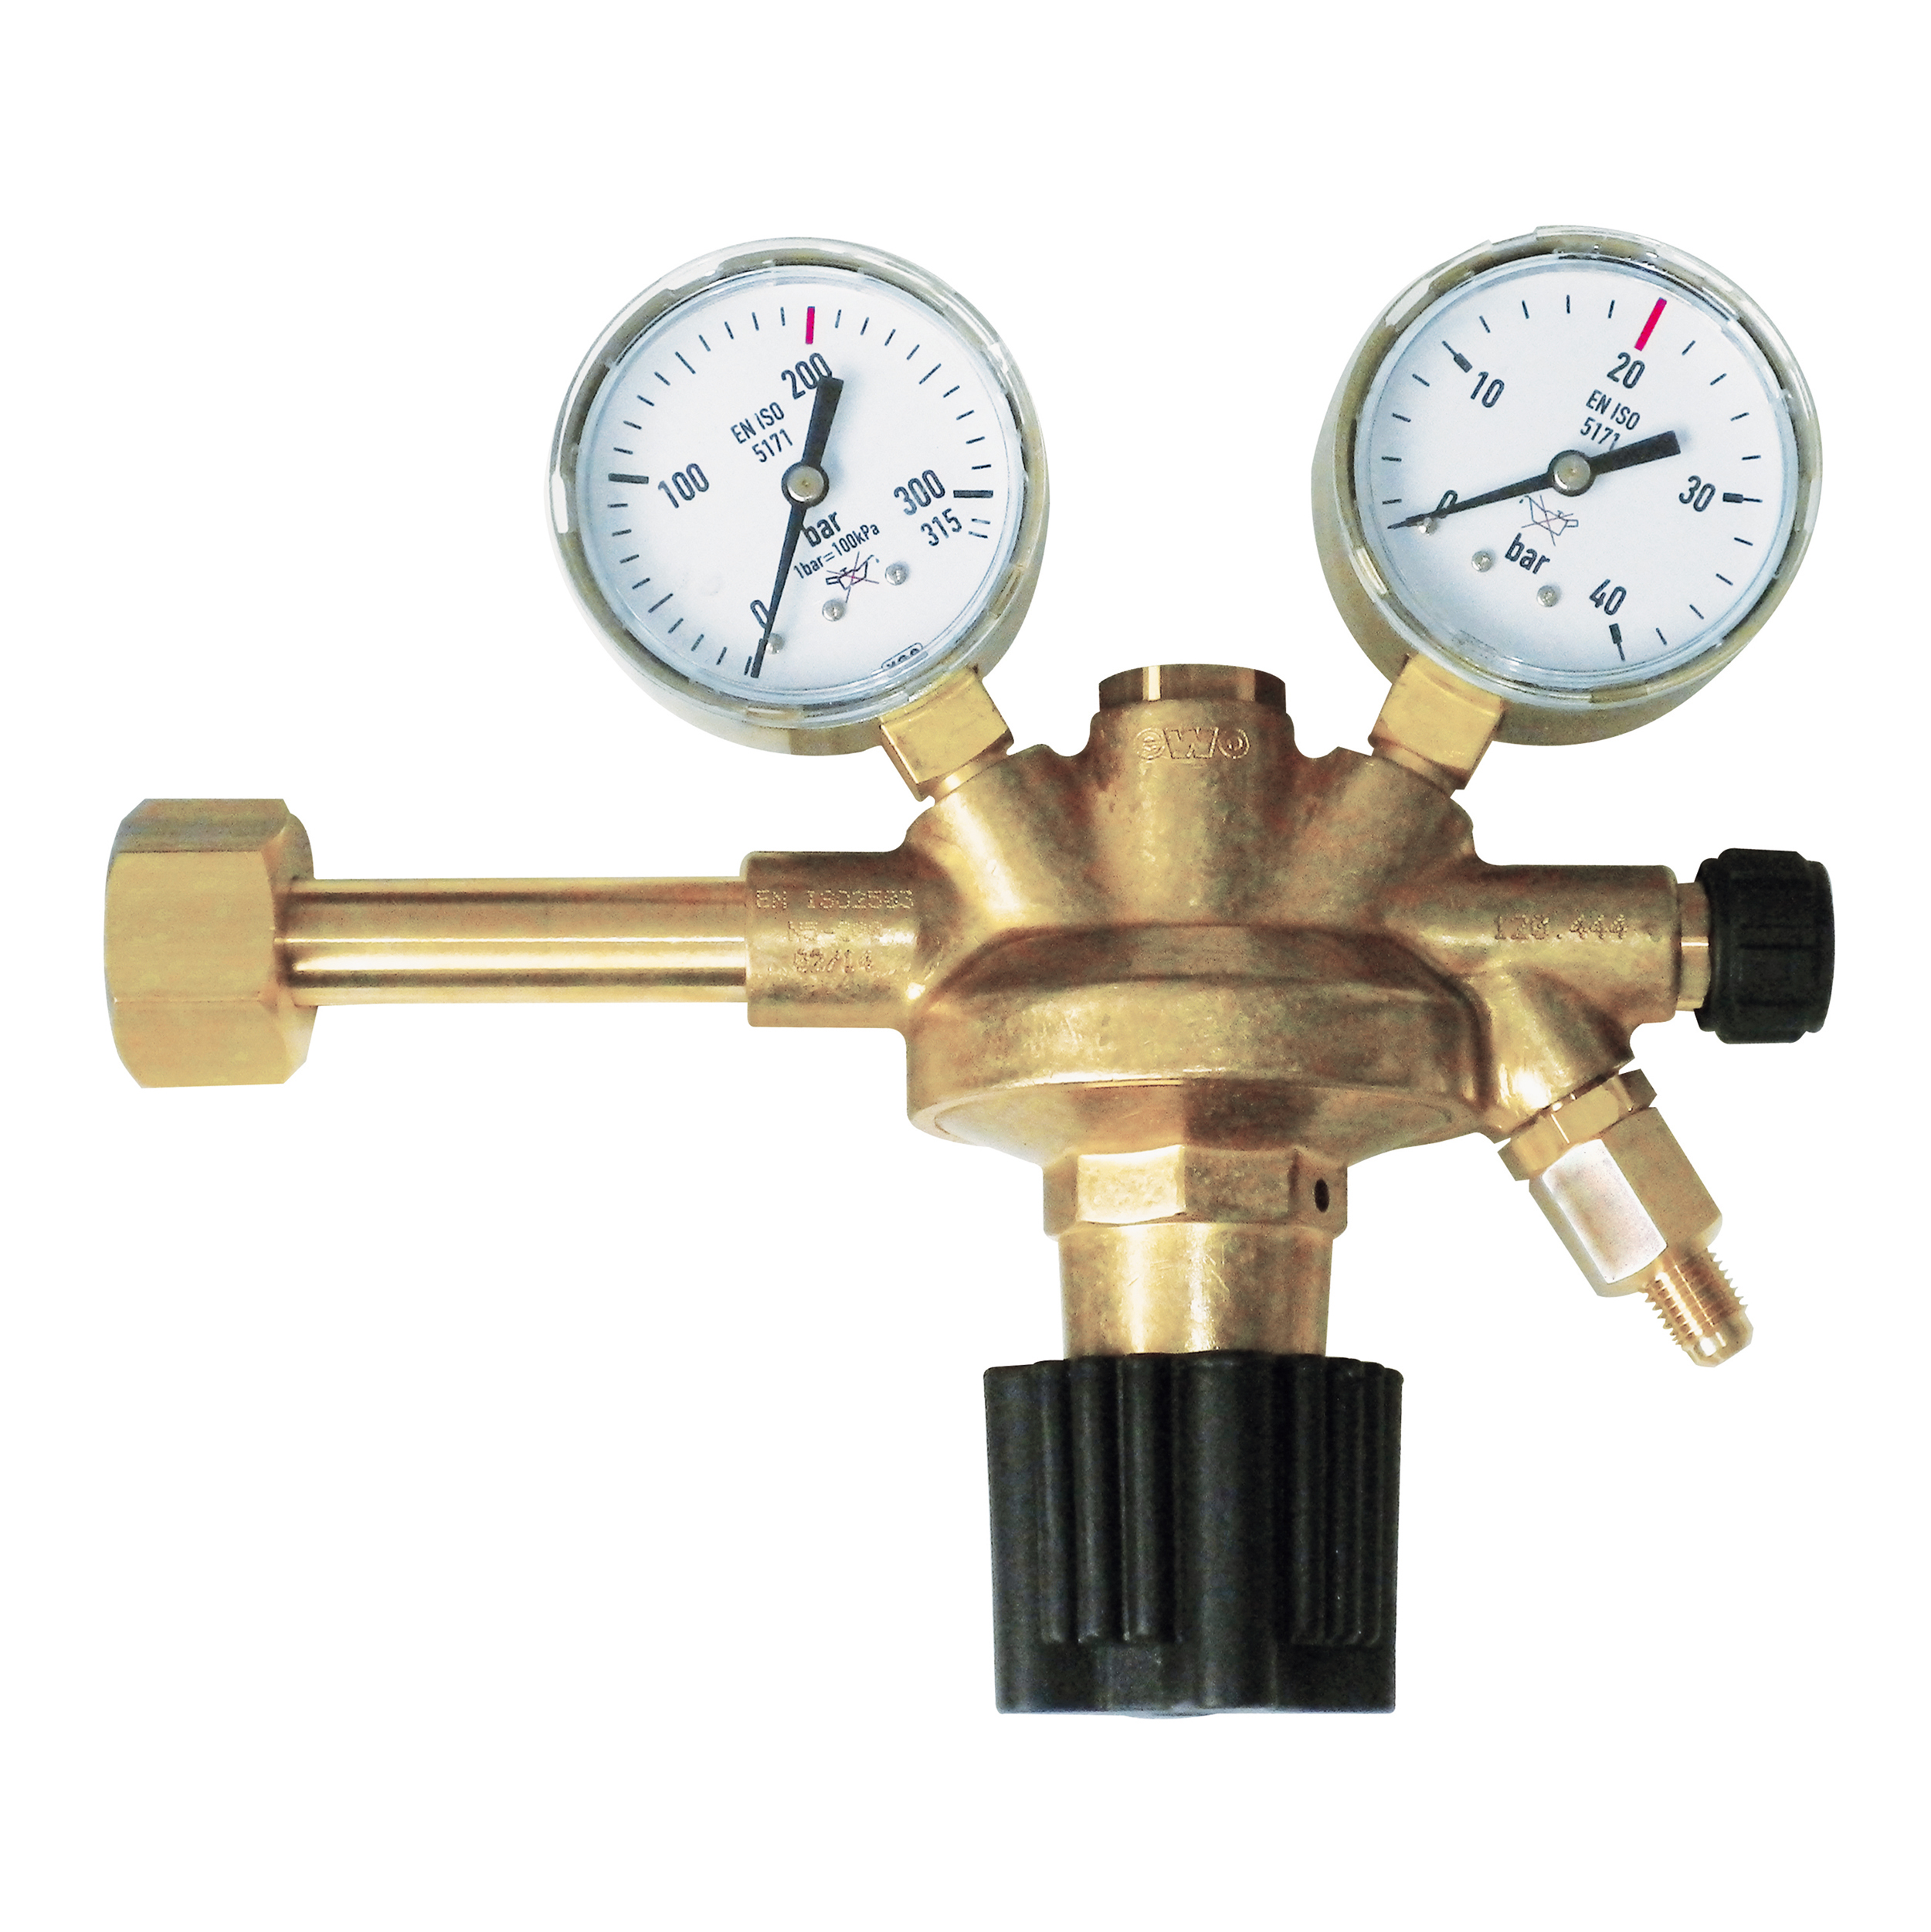 pressure regulator nitrogen, W21,8x1/14", 20 bar, 1/4"a SAE, with shut-off valve, handwheel